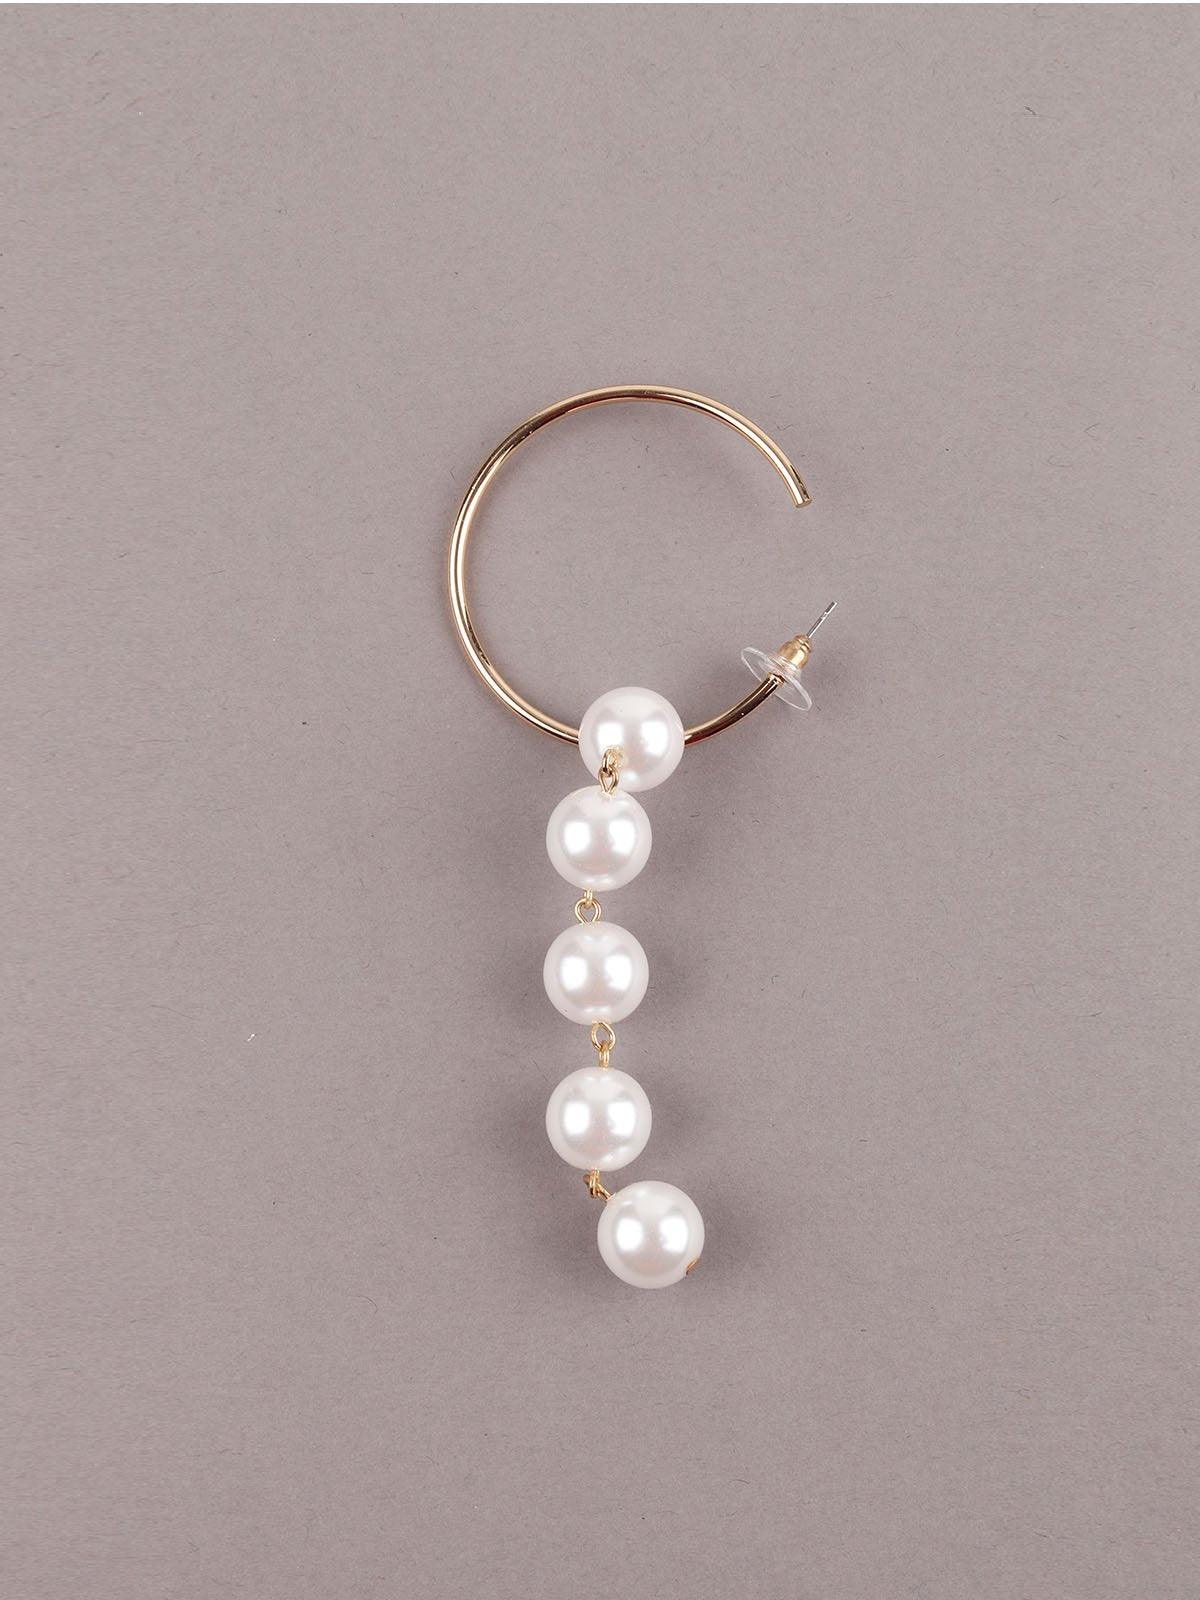 Women's Golden Hoop Earrings With Pearls - Odette